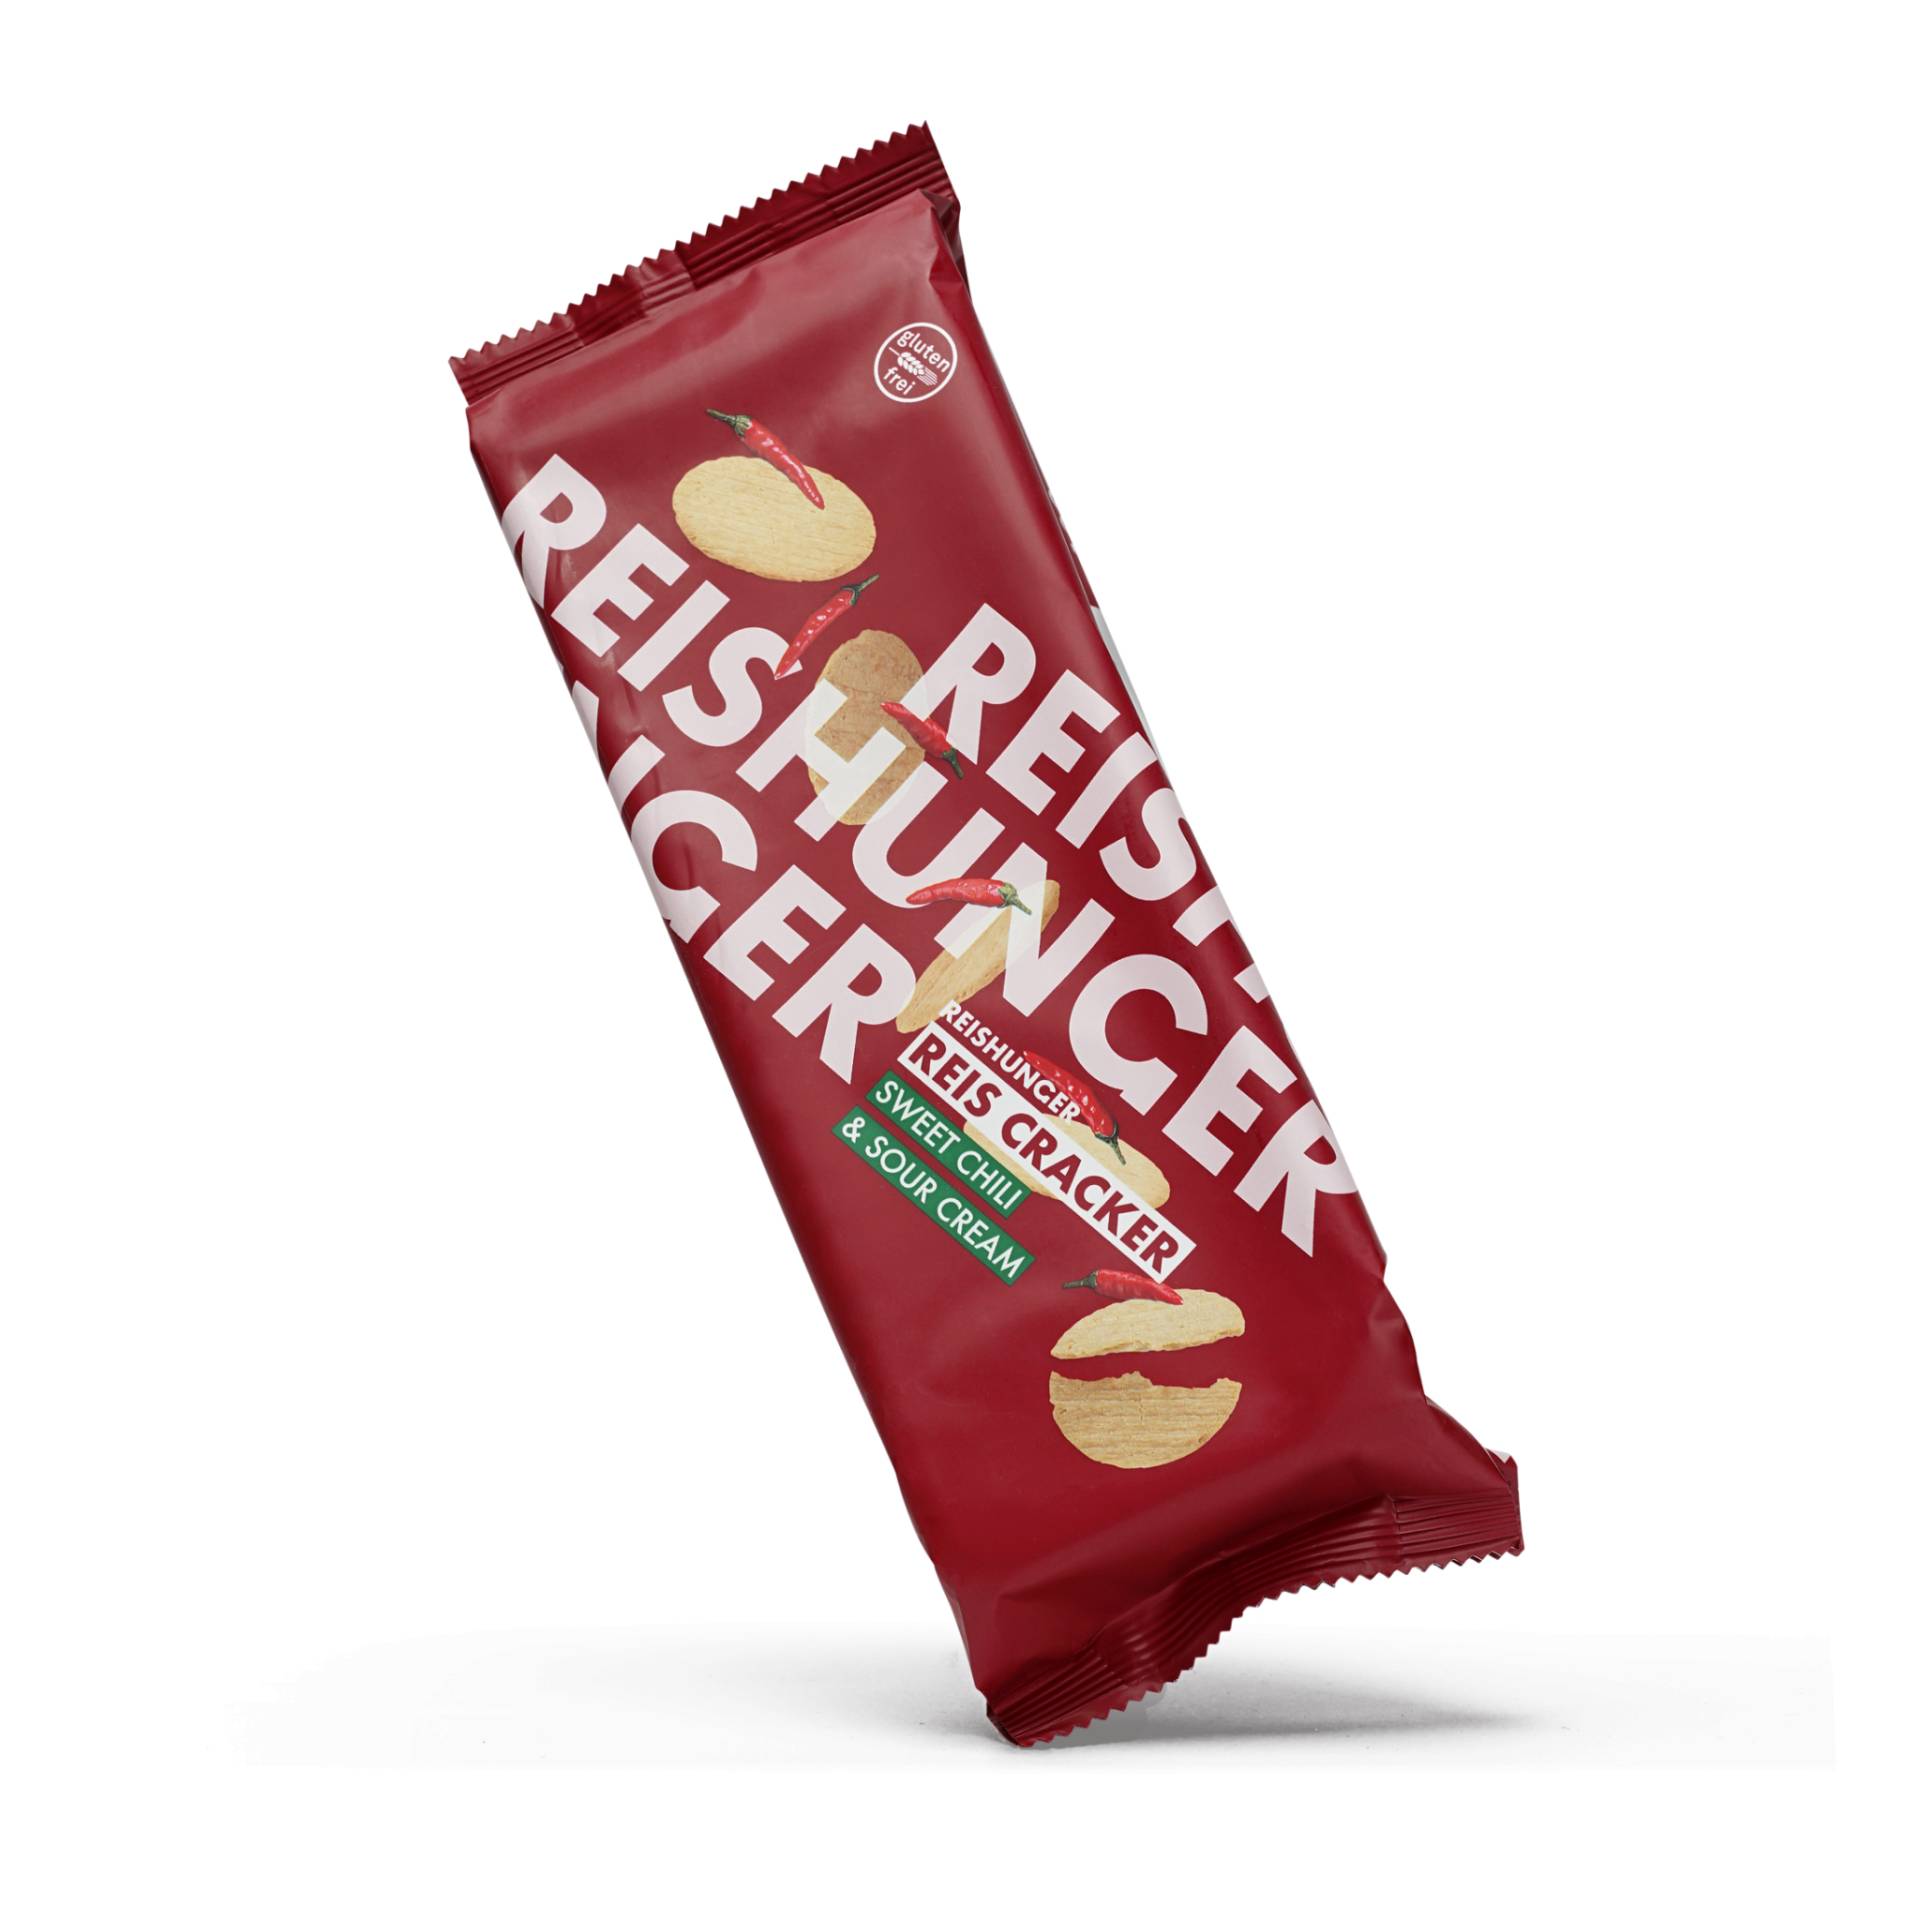 Reiscracker Sweet Chili & Sour Cream (12er Set)